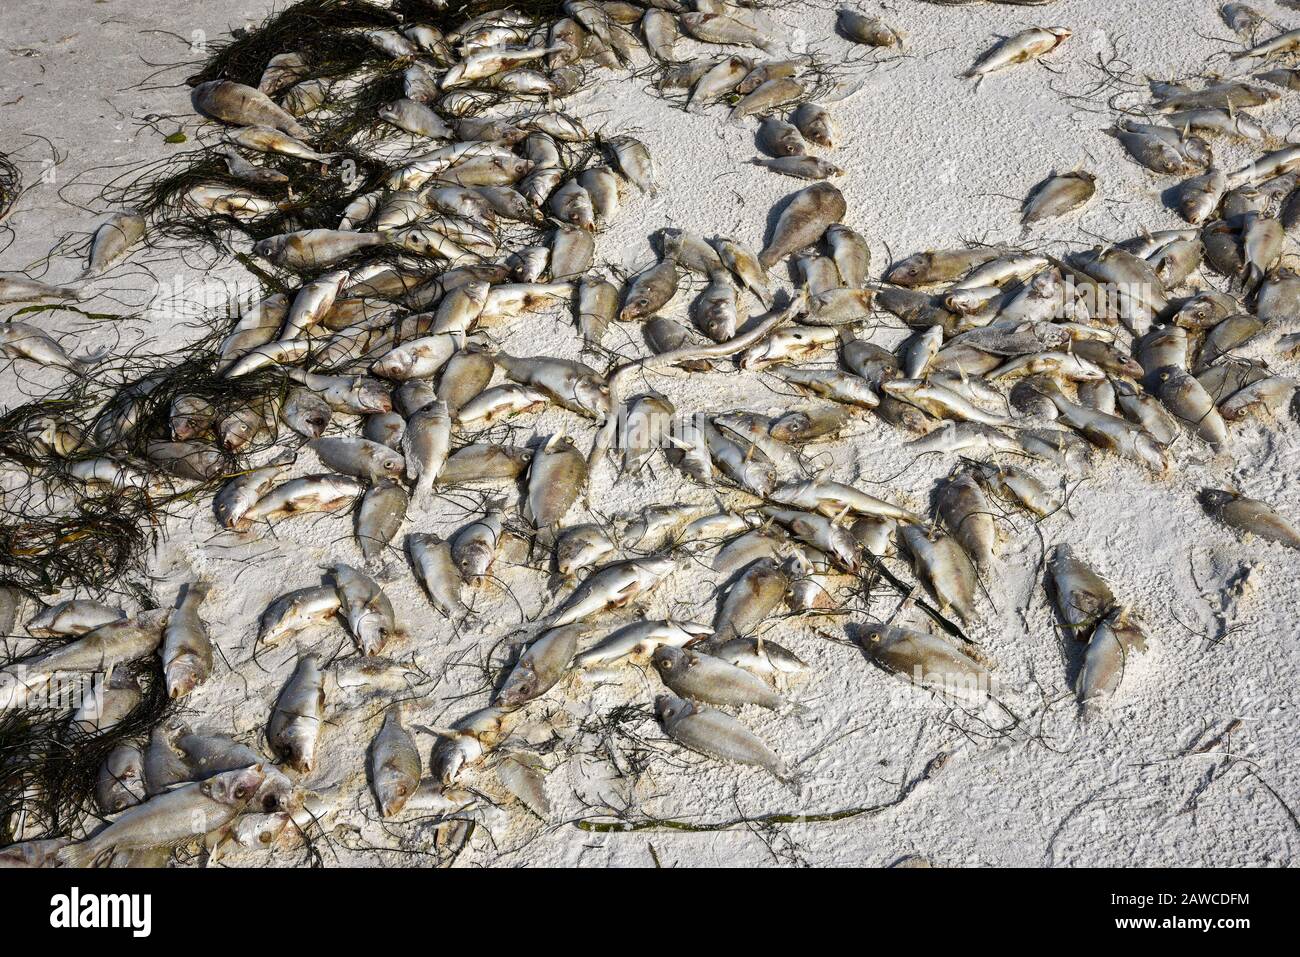 Tide rouge: Plage couverte de poissons morts tués par la floraison d'algues rouges toxiques. Banque D'Images